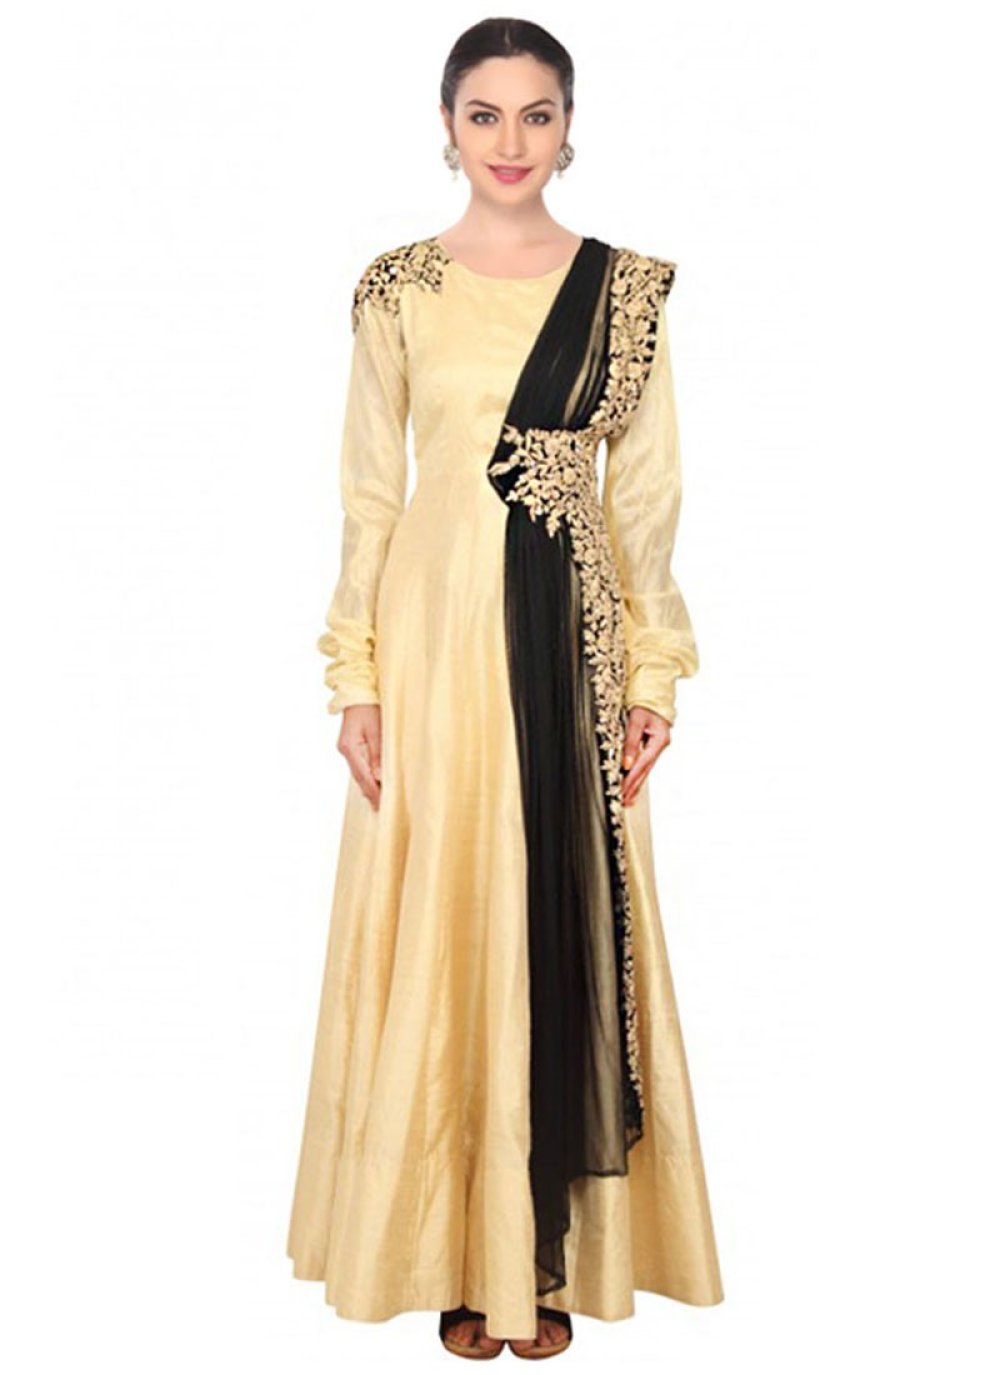 Buy Embroidered Work Net Gold Designer Replica Salwar Kameez Online at ...